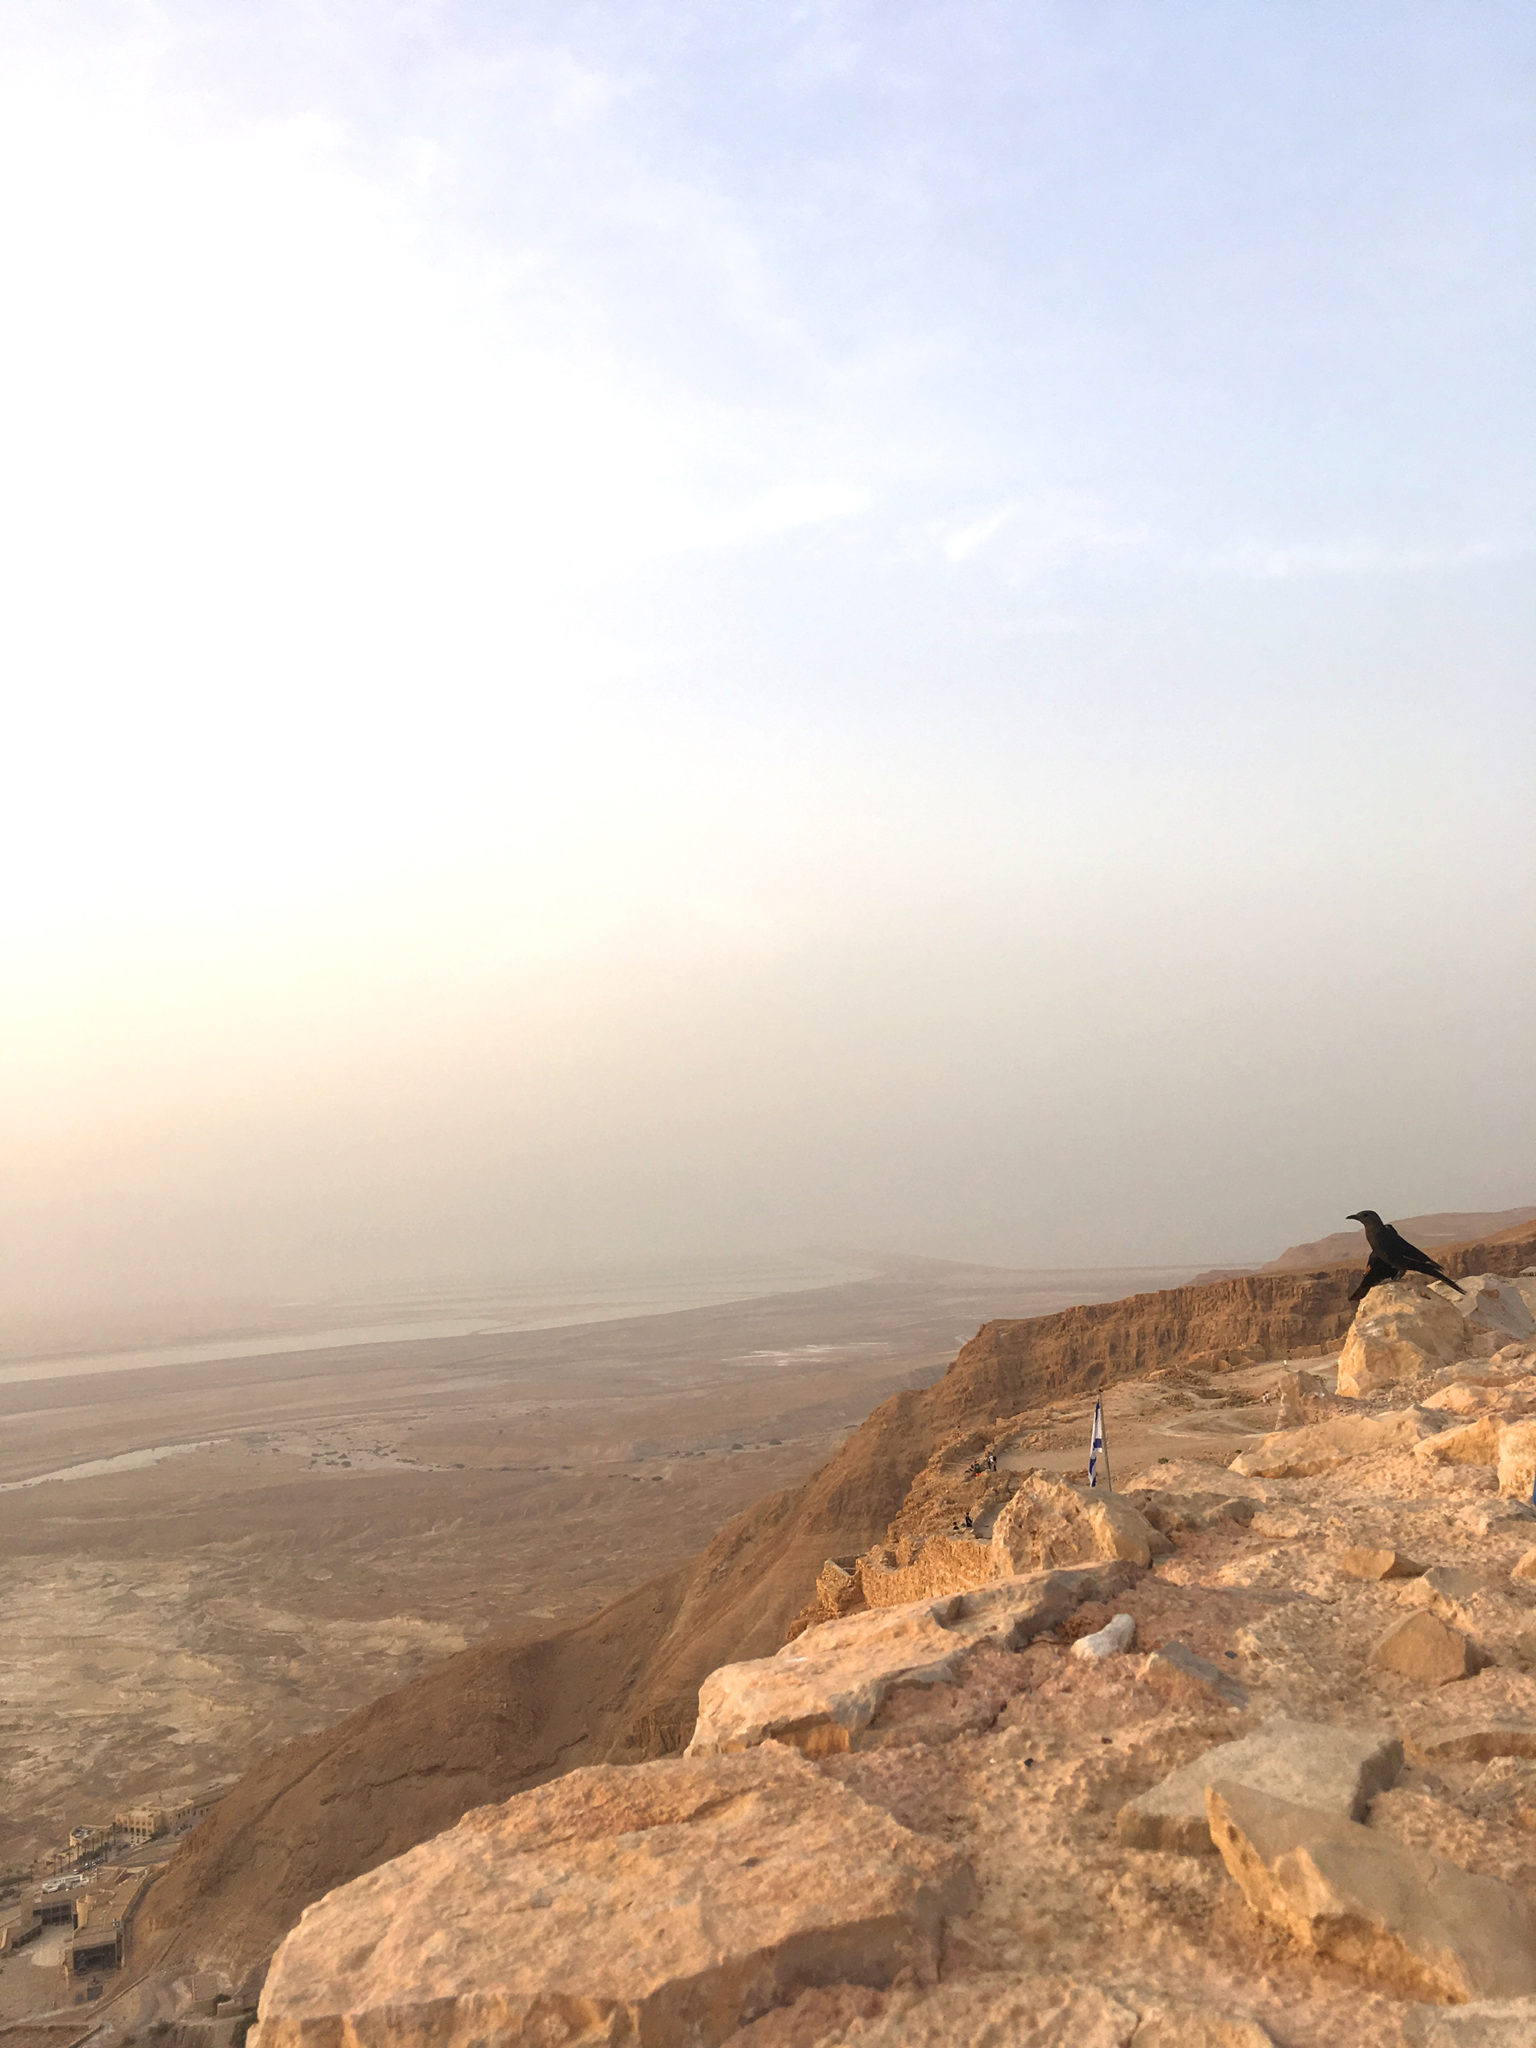 Masada fortress